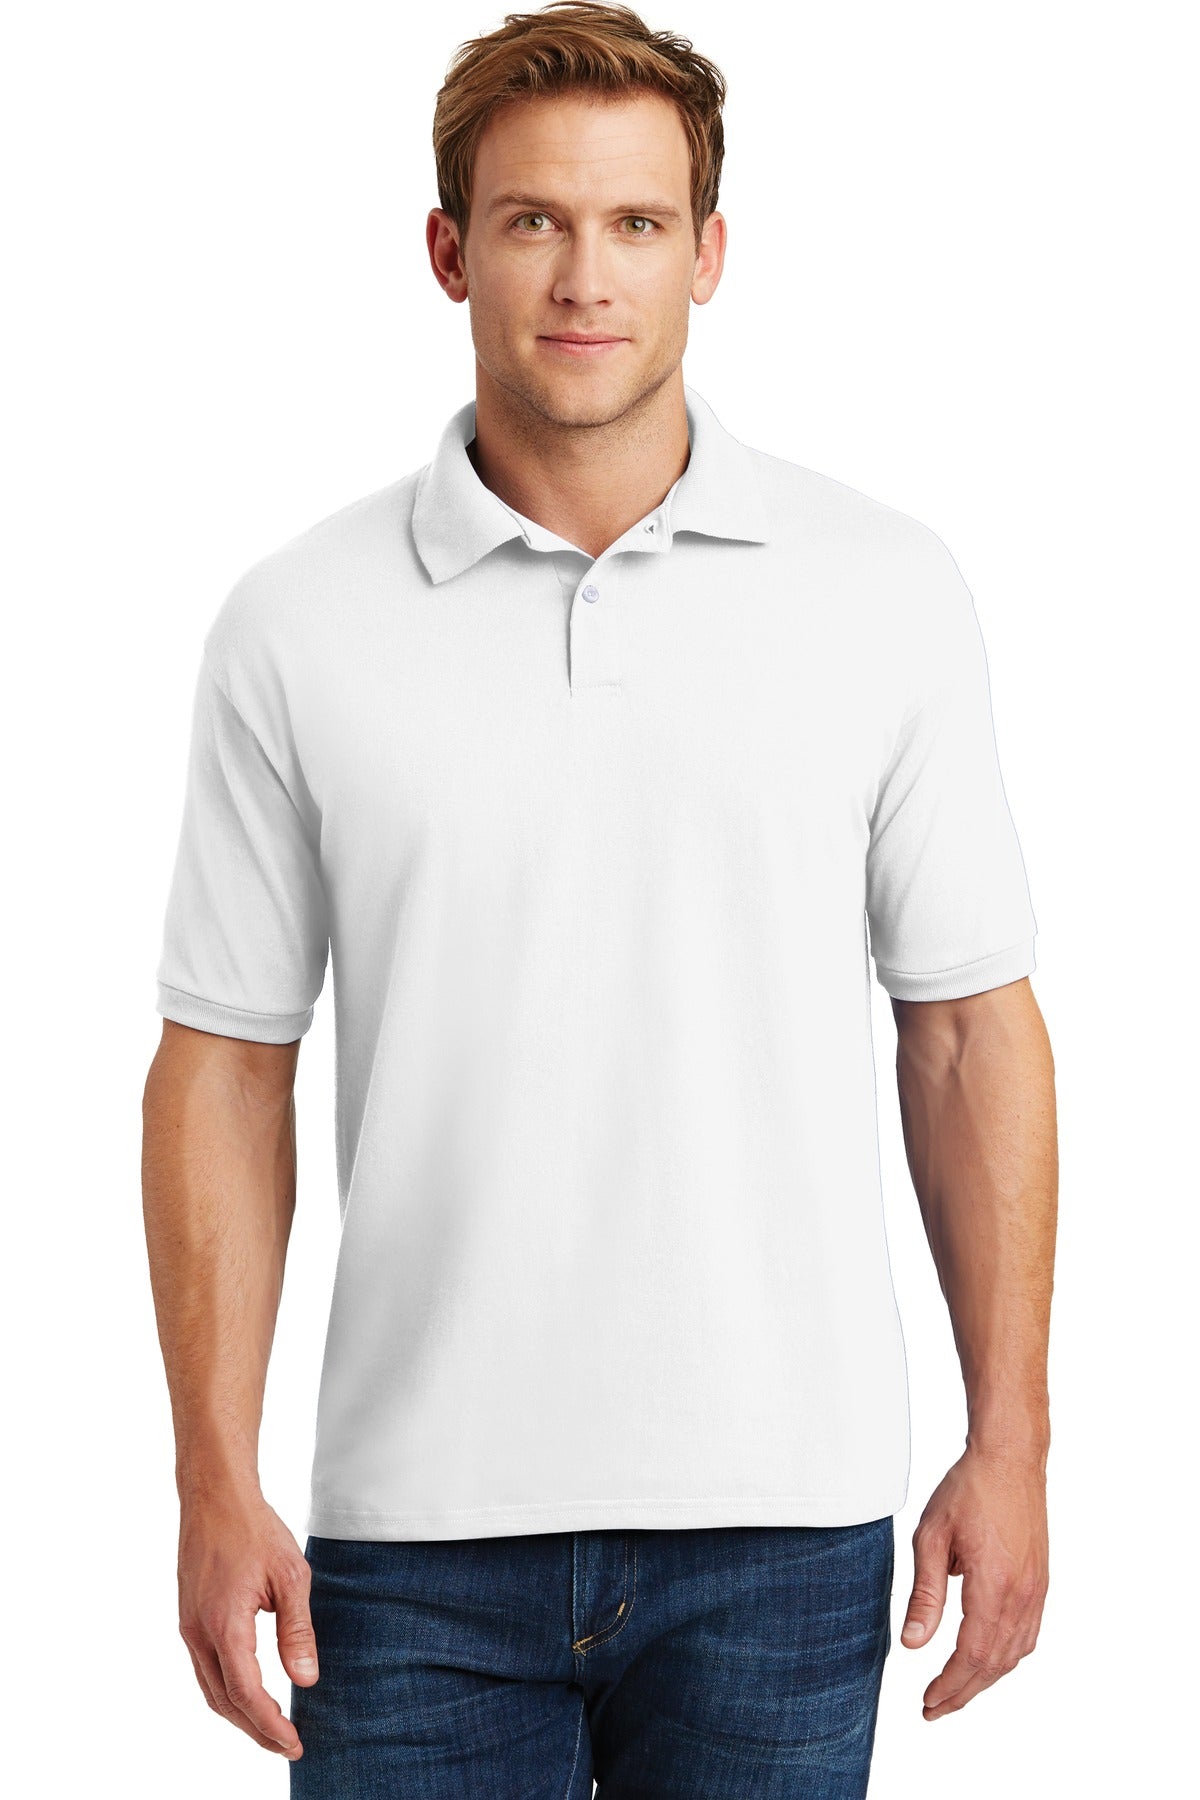 Hanes® EcoSmart® - 5.2-Ounce Jersey Knit Sport Shirt. 054X